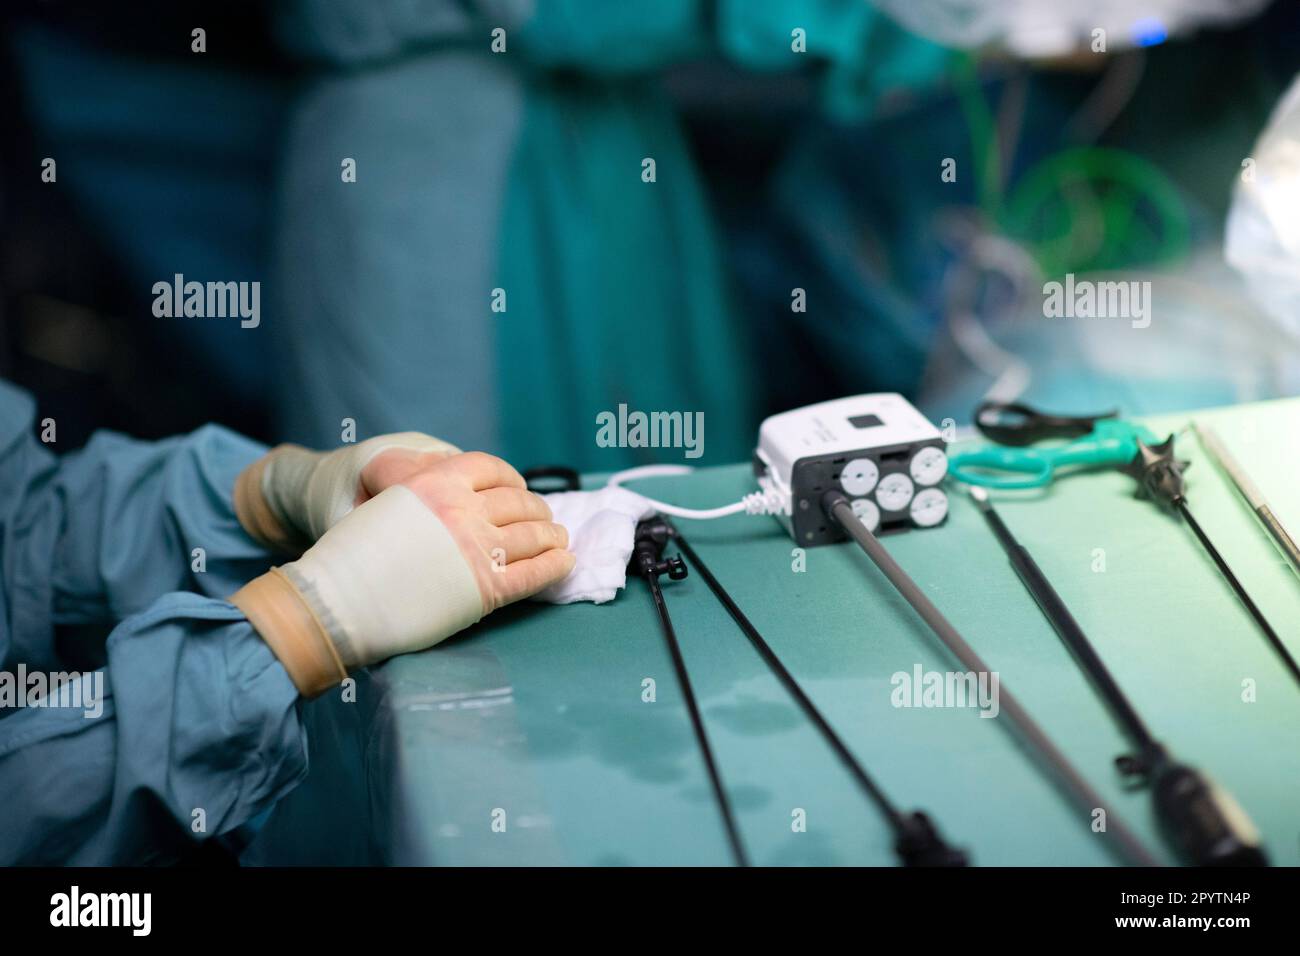 Dettaglio durante una moderna chirurgia ibrida, 3D tecnologia innovativa con il sistema DaVinci una robotica KI assistita da robot. Intervento di un tumore al fegato e allo stomaco presso l'Ospedale universitario Carl Gustav Carus, Clinica e Policlinica per la Chirurgia viscerale, Chirurgia toracica e Chirurgia vascolare e Centro per le malattie tumorali a Dresda, Sassonia, Germania. La chirurgia assistita da robot è una procedura chirurgica moderna in medicina. Consente al chirurgo di effettuare tecniche chirurgiche minimamente invasive con il supporto del sistema robotizzato. Foto Stock